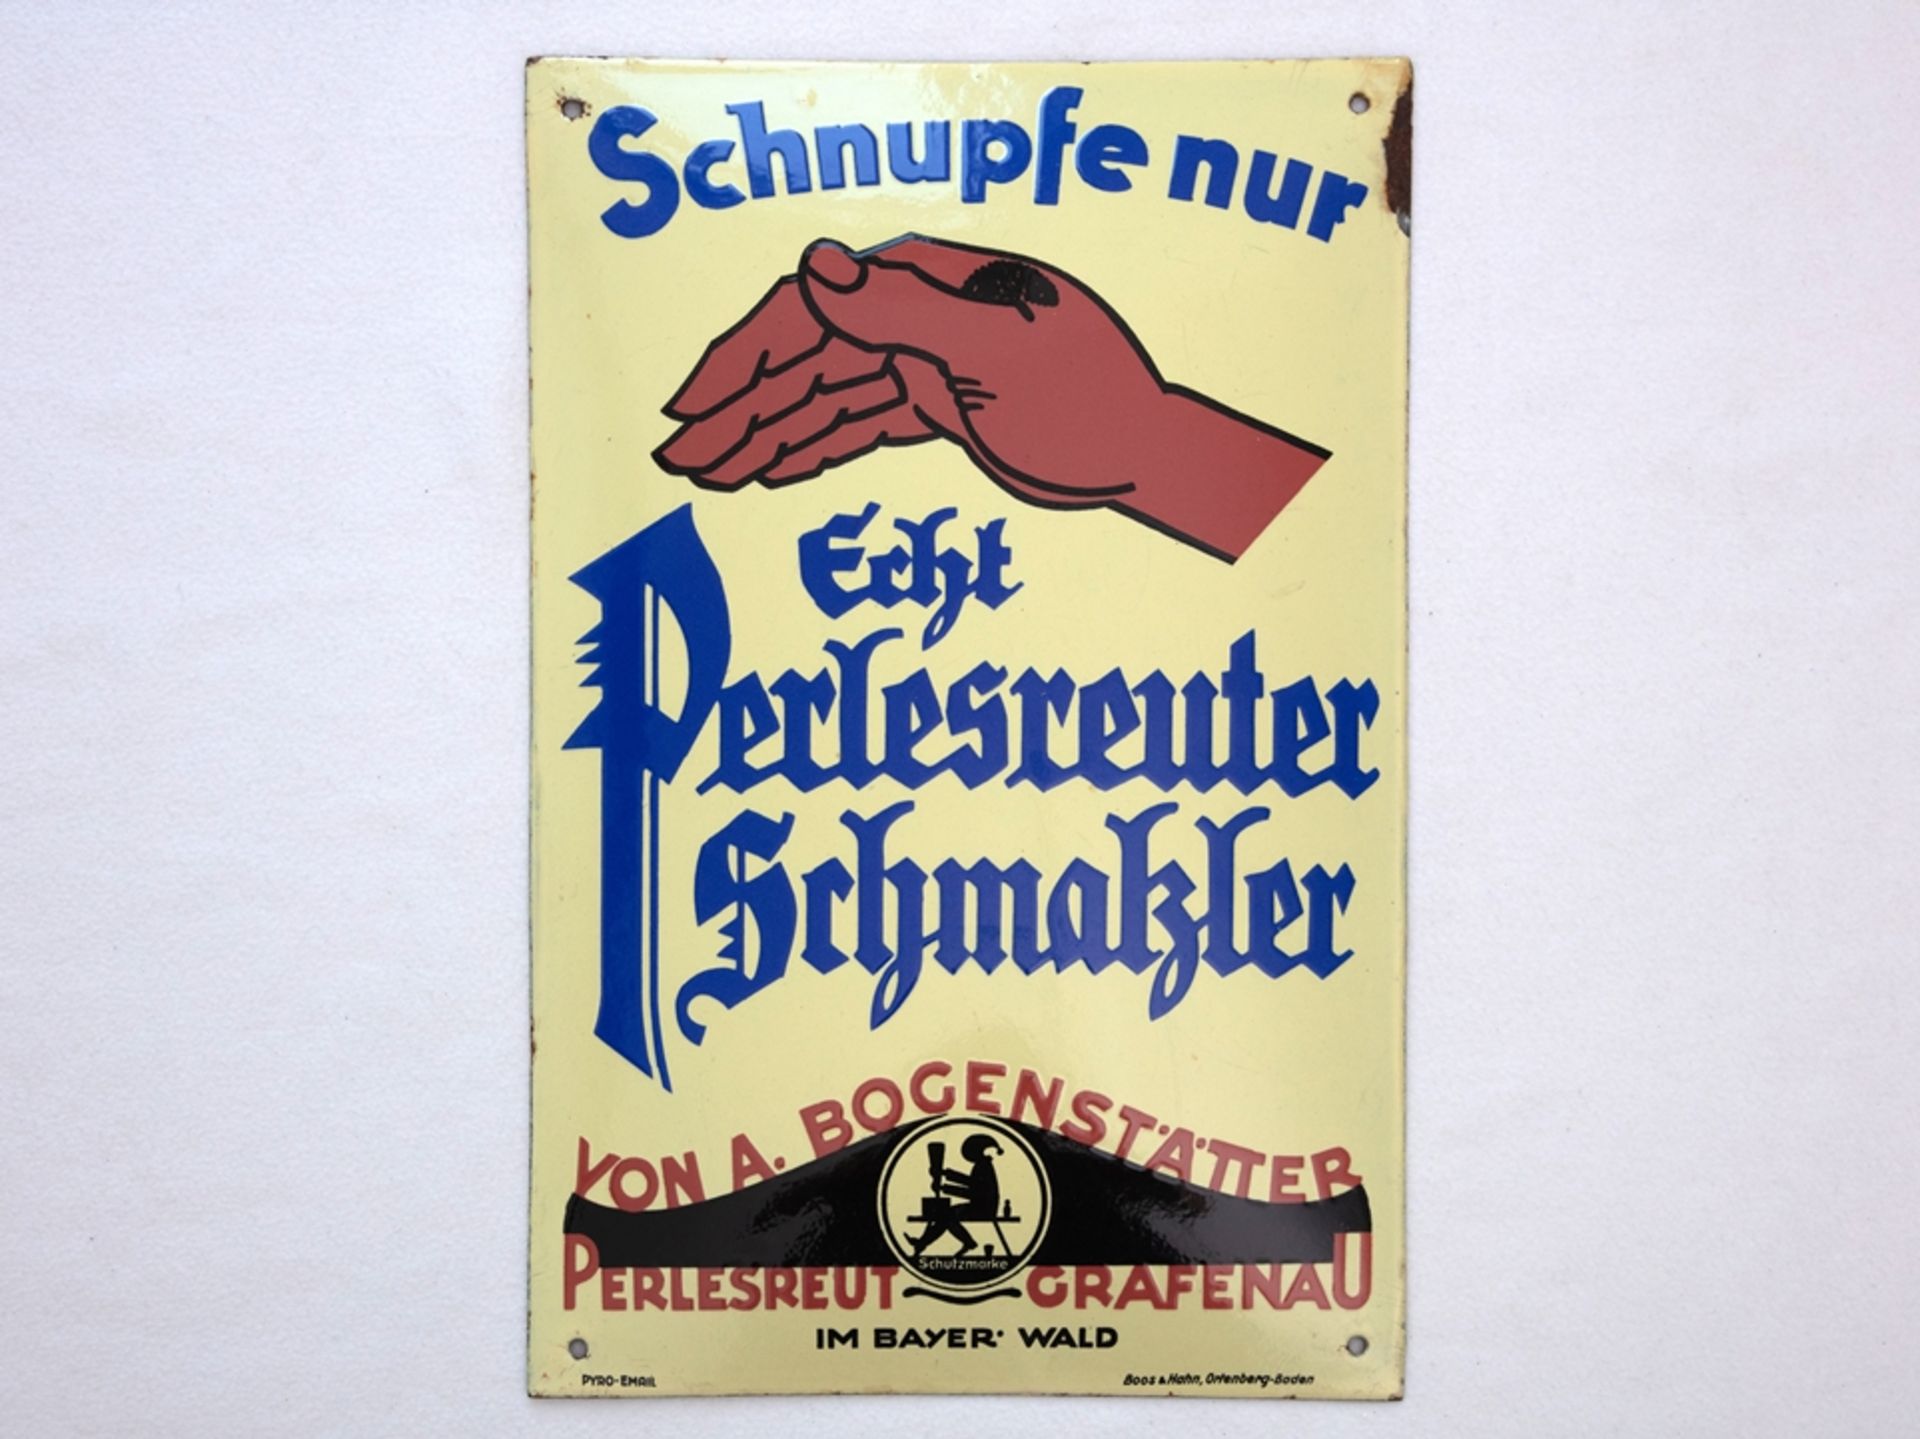 Emailschild Schnupfe nur Perlesreuter Schmalzler, Perlesreut/Grafenau, um 1930 - Bild 7 aus 7